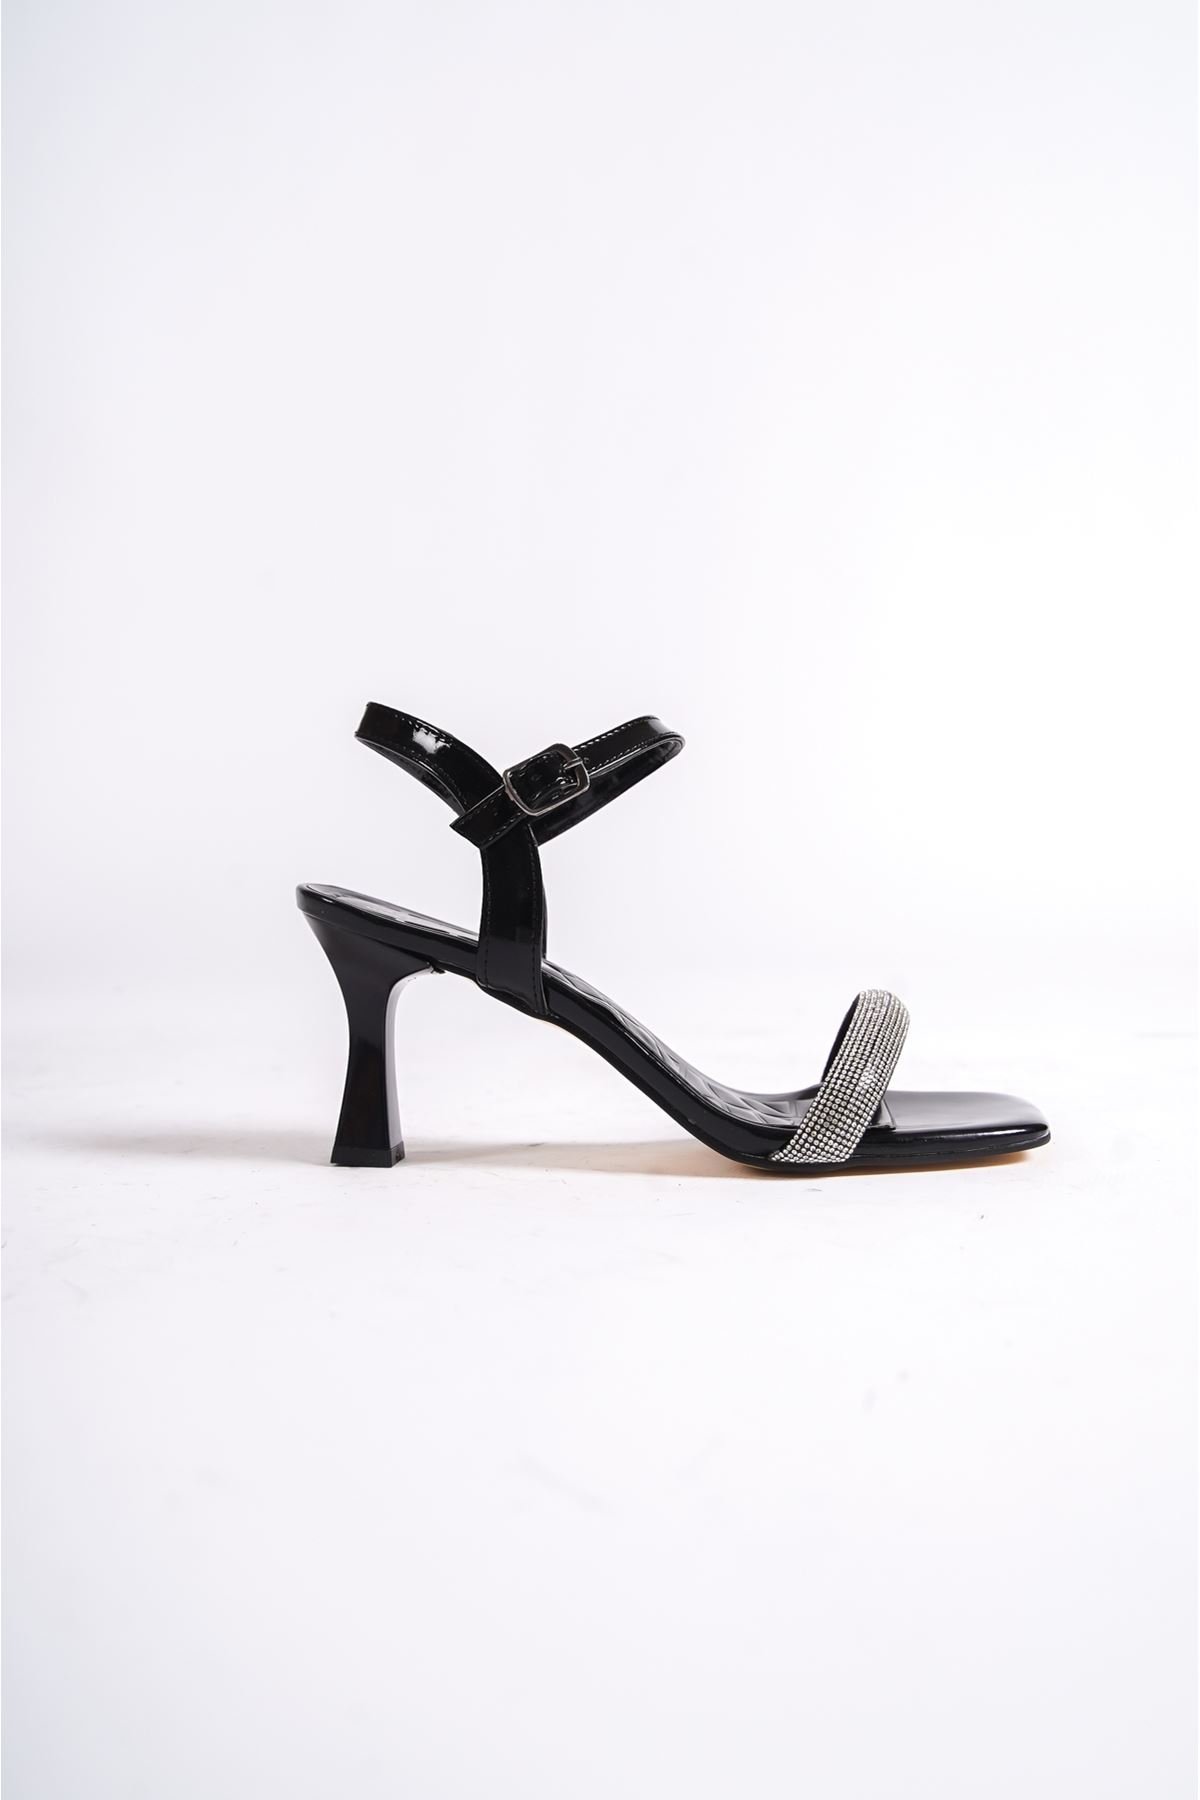 Frederic Siyah Rugan Taşlı  Şeffaf Topuklu Kadın Ayakkabı